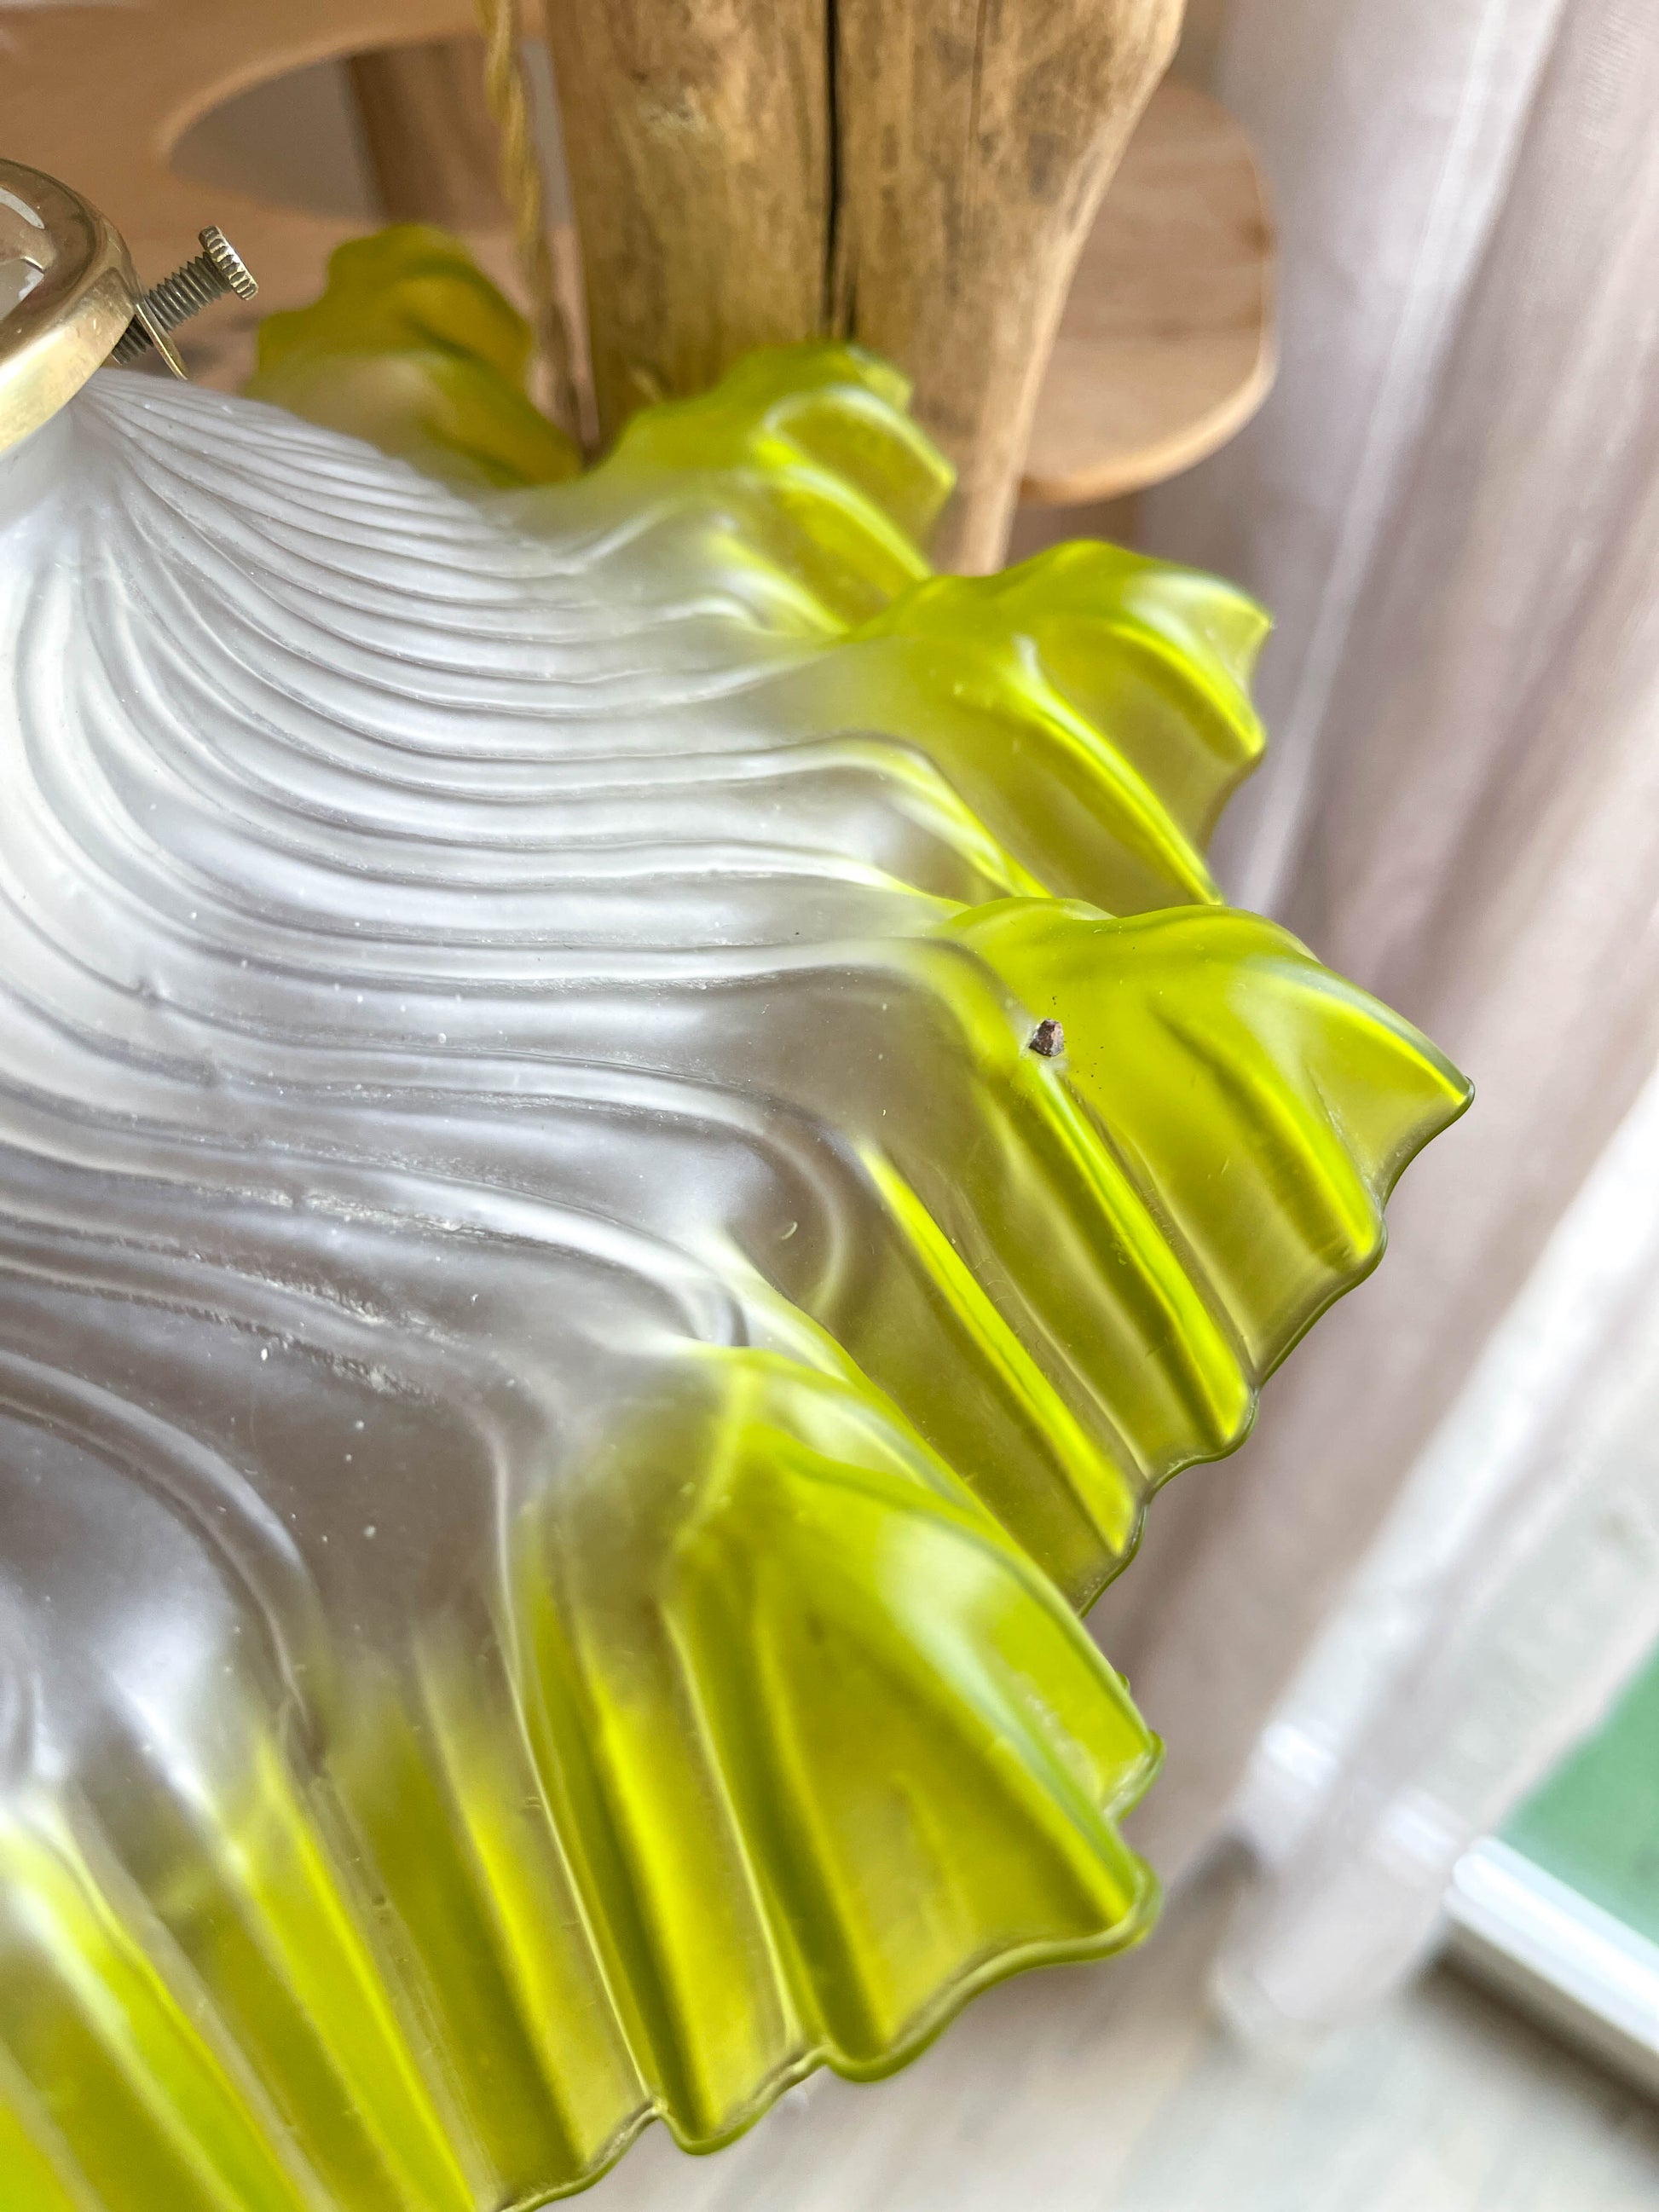 Baladeuse abat-jour vintage en verre dentellé vert personnalisable